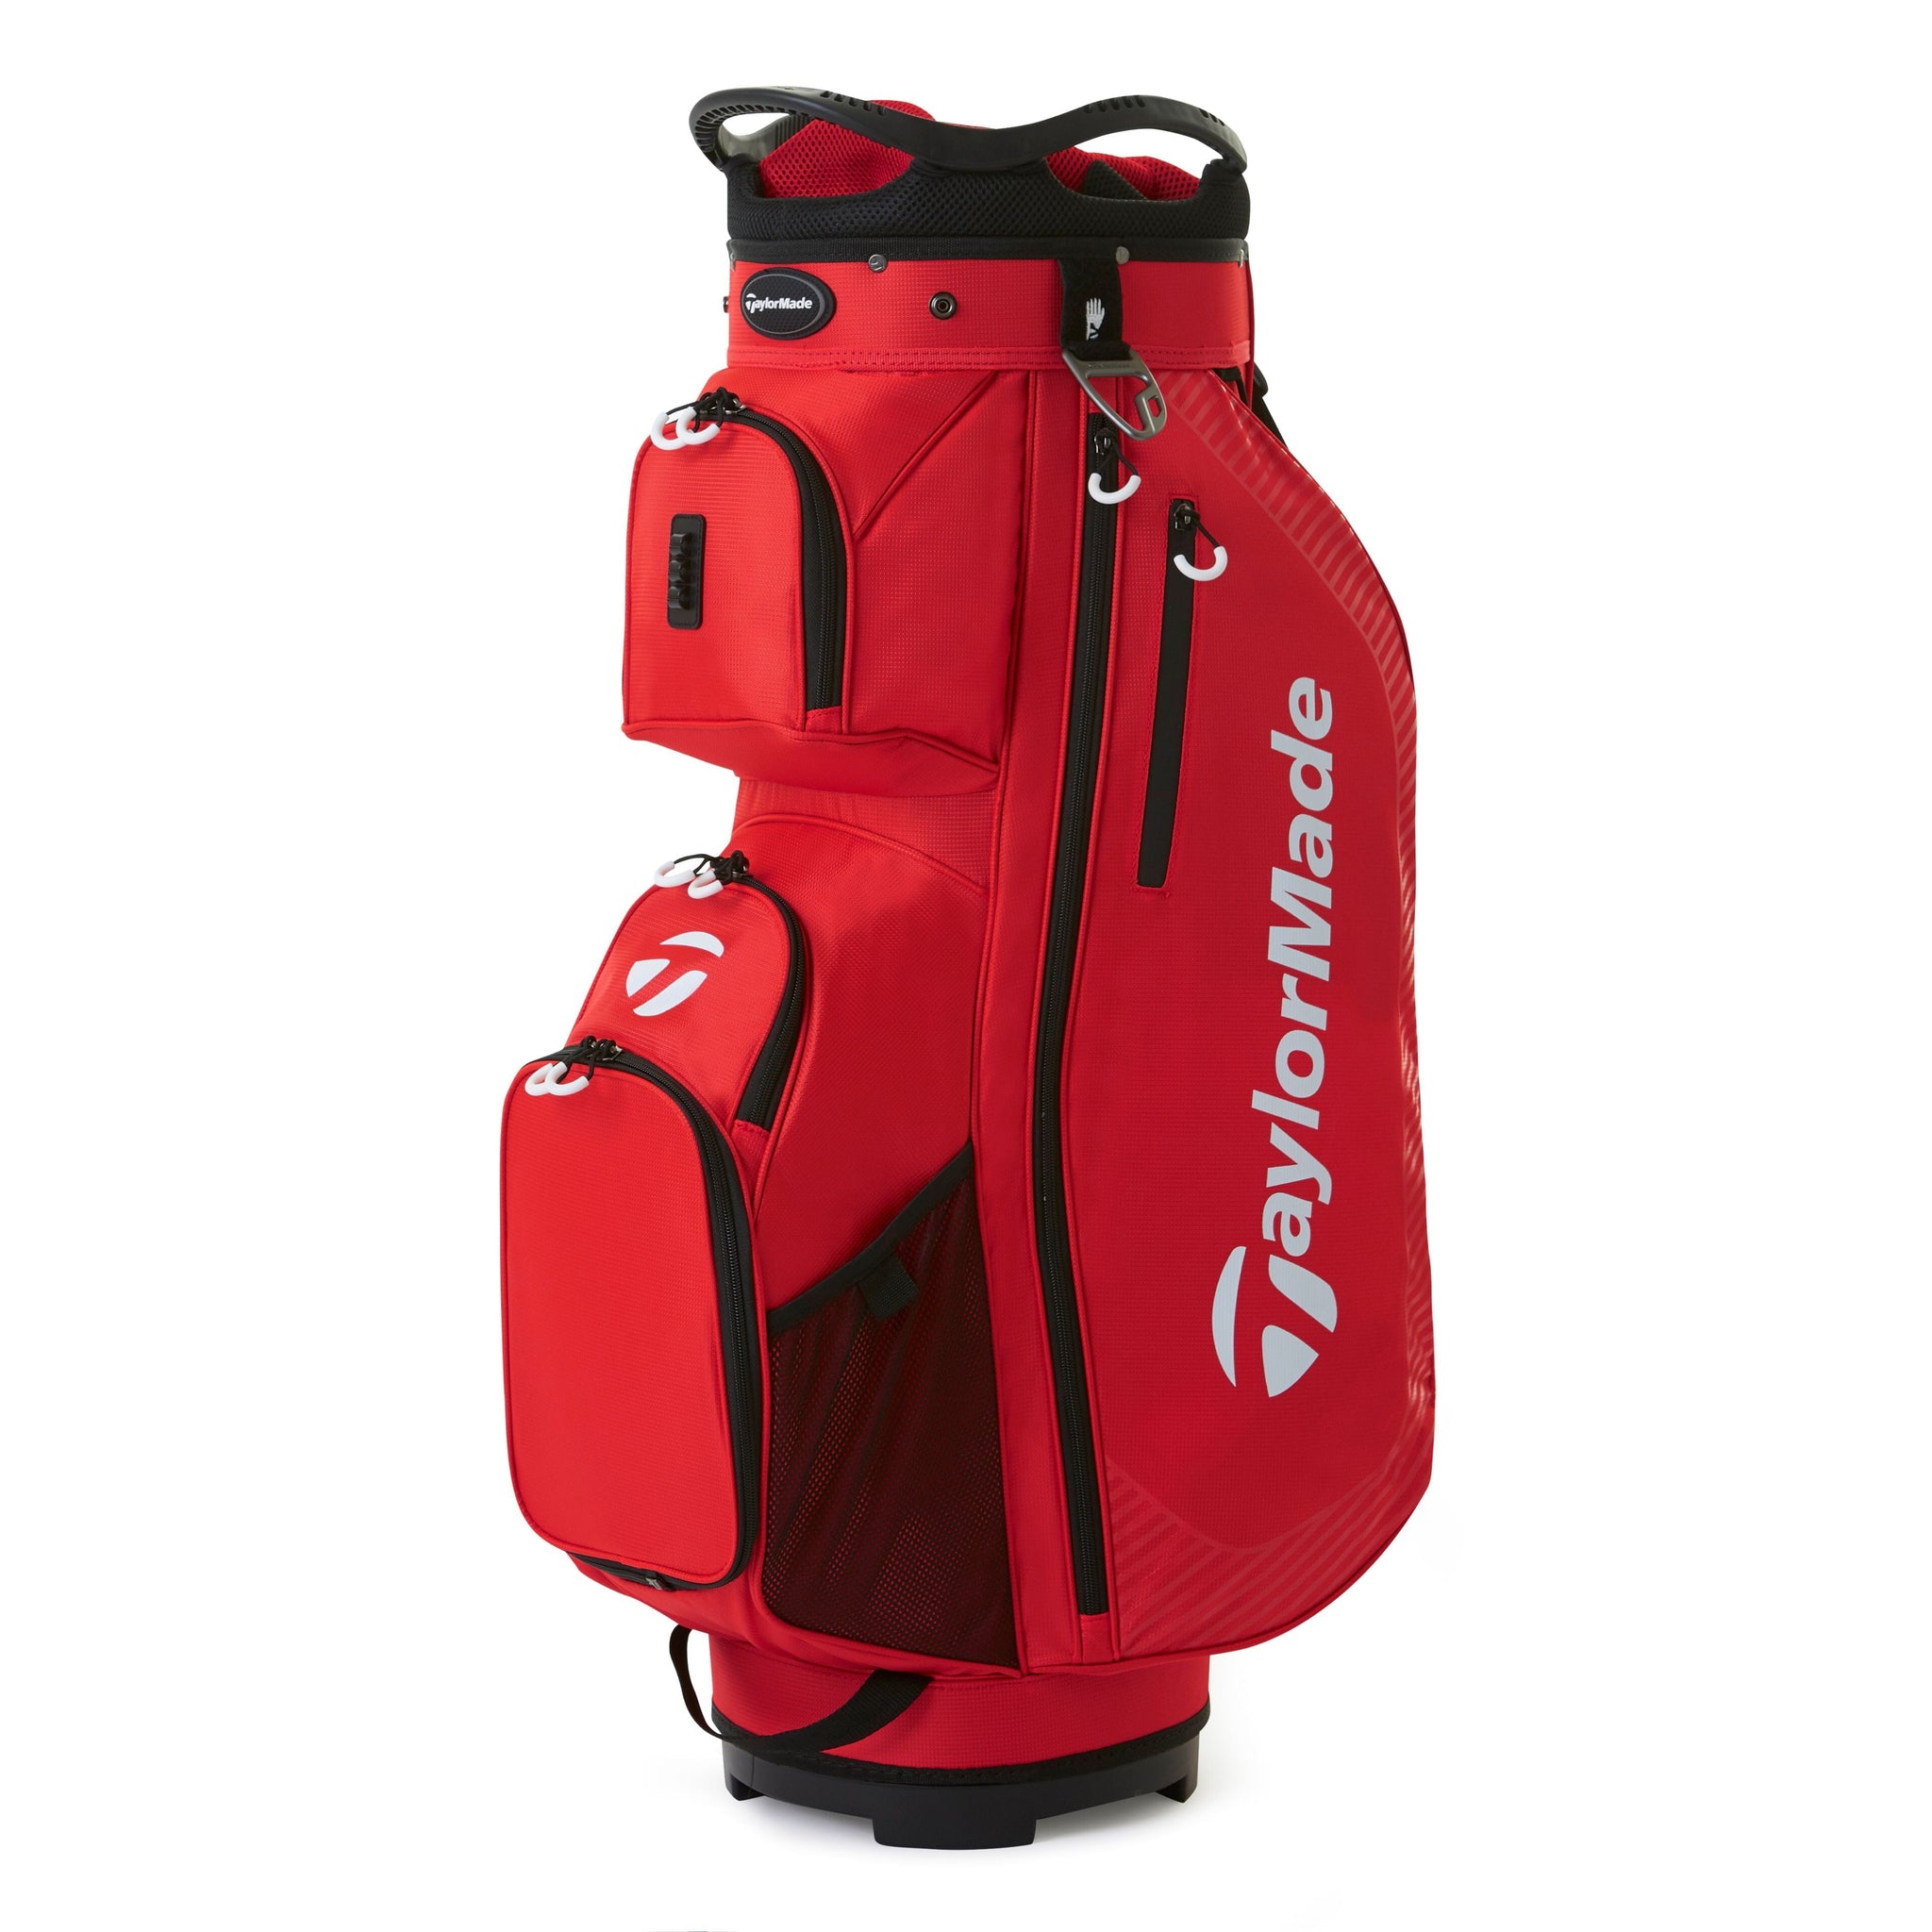 TaylorMade Pro Golf Cart Bag Online Golf Shop